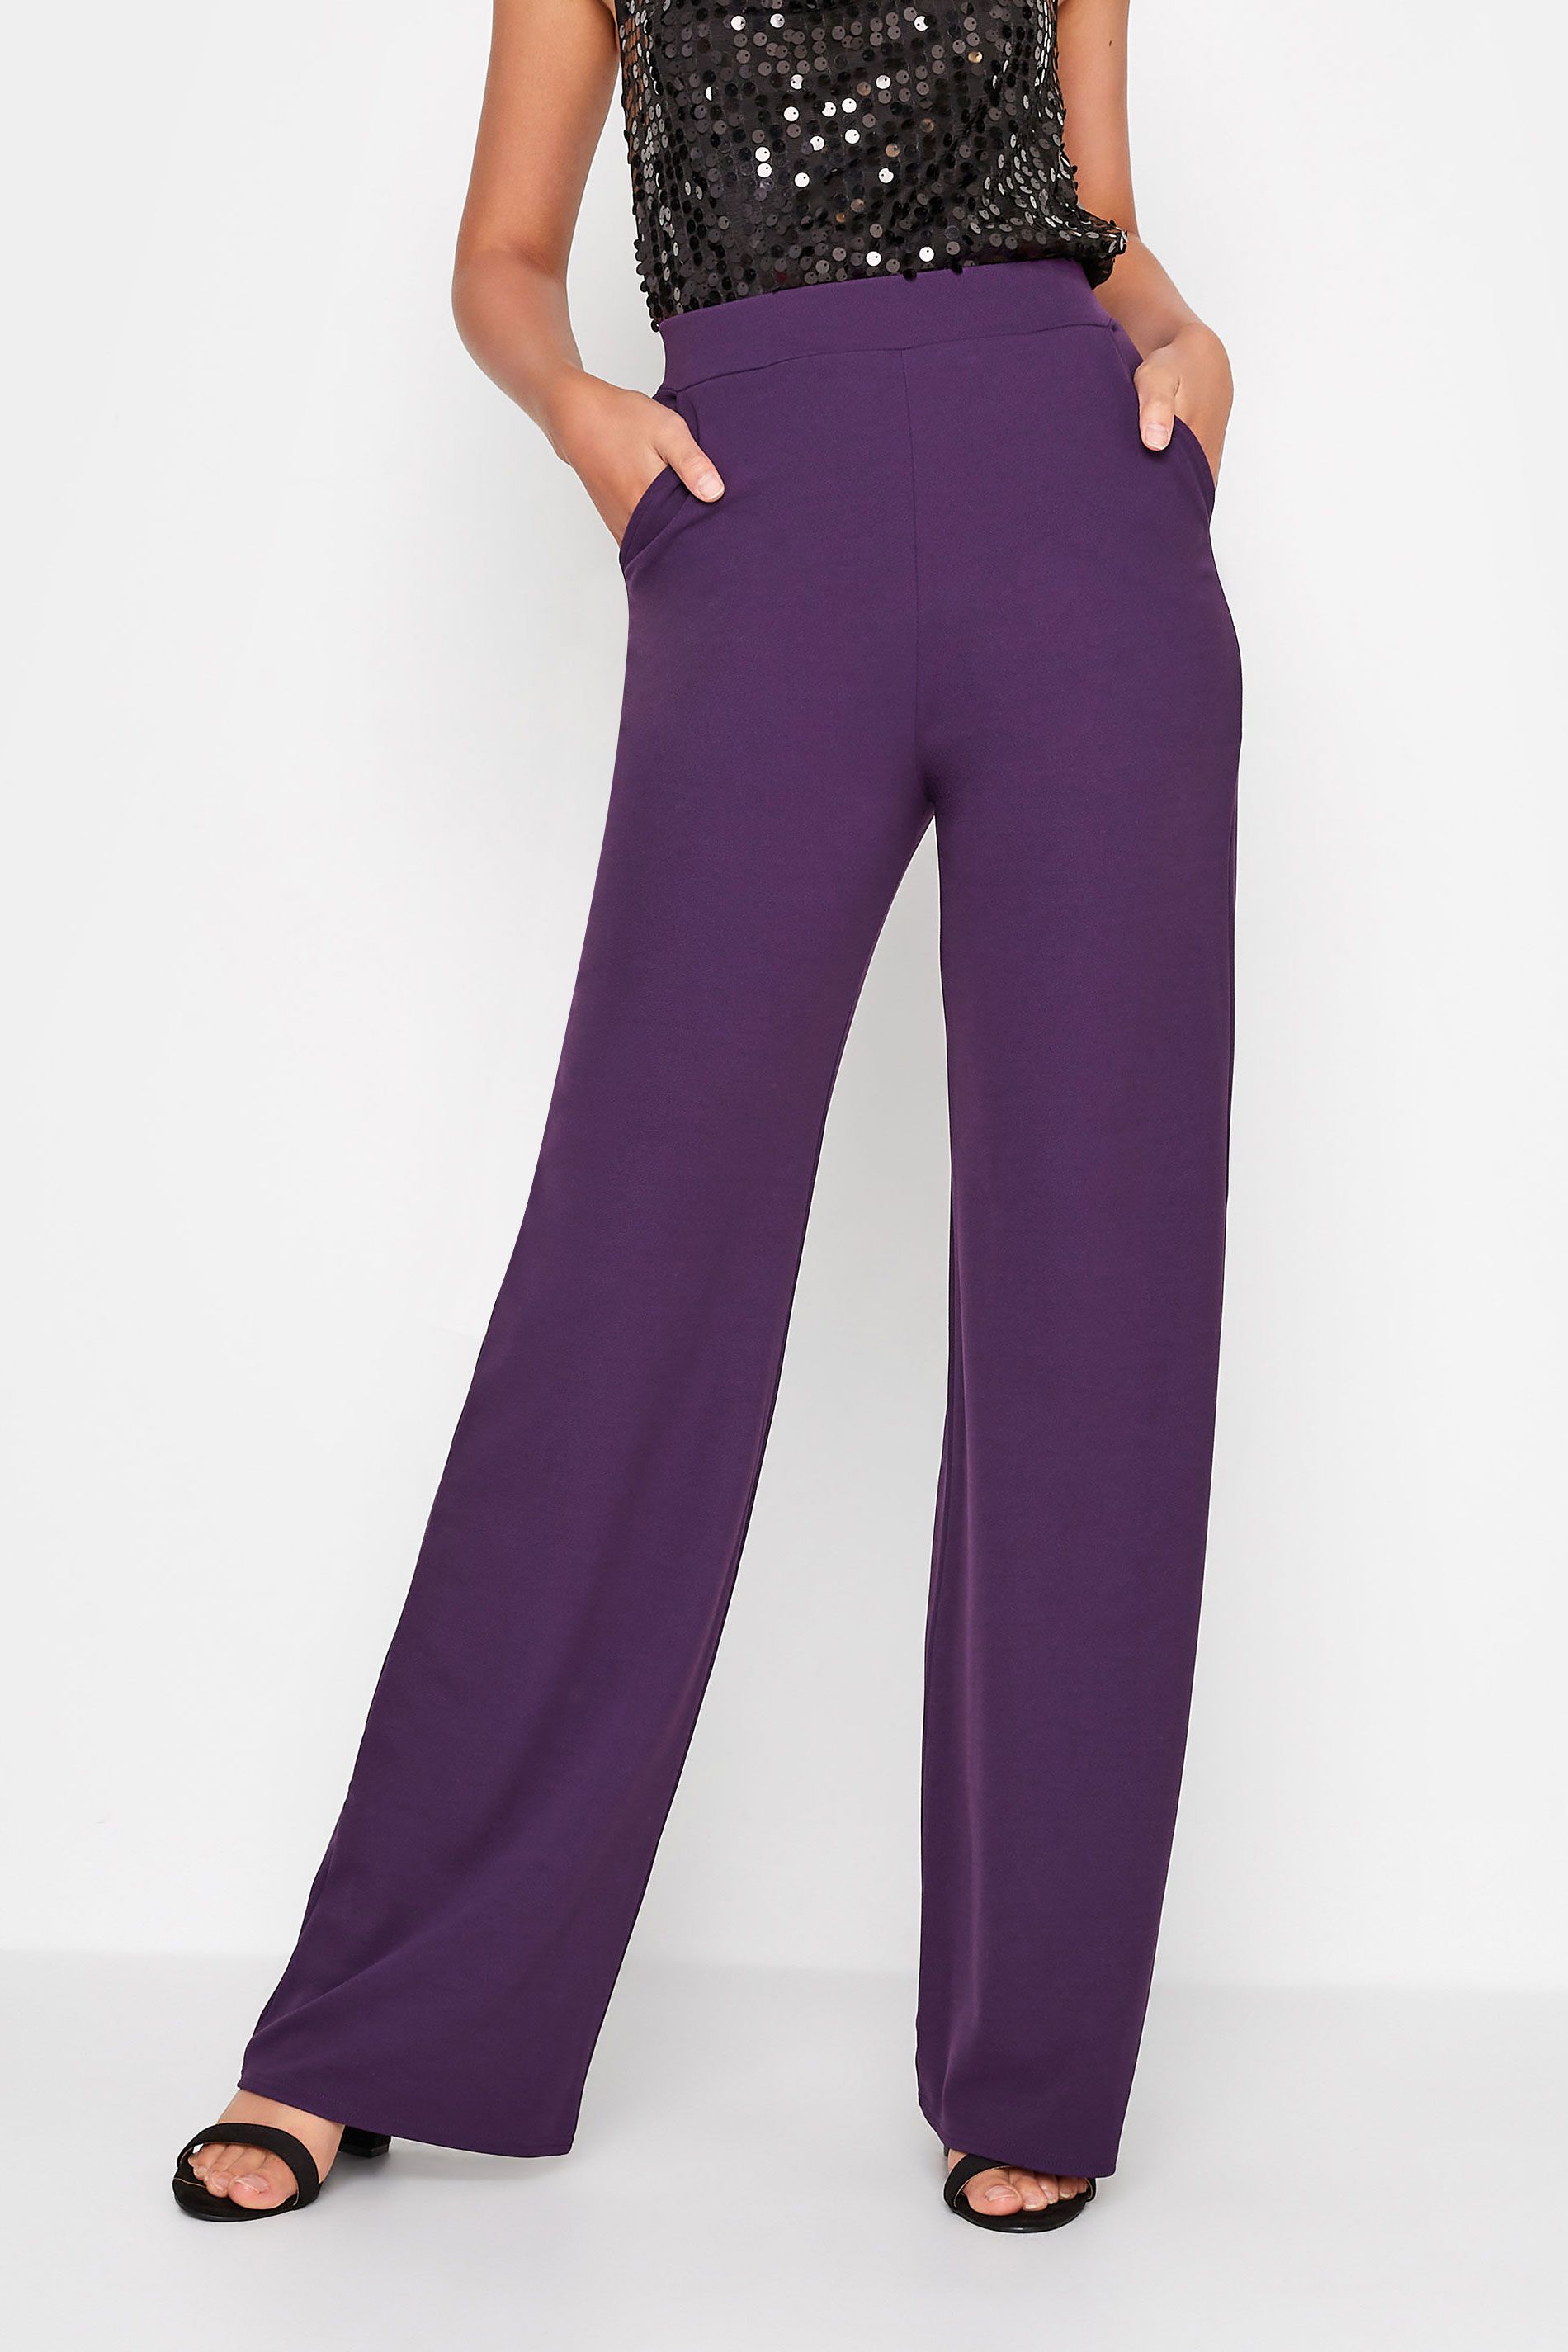 LTS Tall Dark Purple Stretch Scuba Wide Leg Trousers | Long Tall Sally